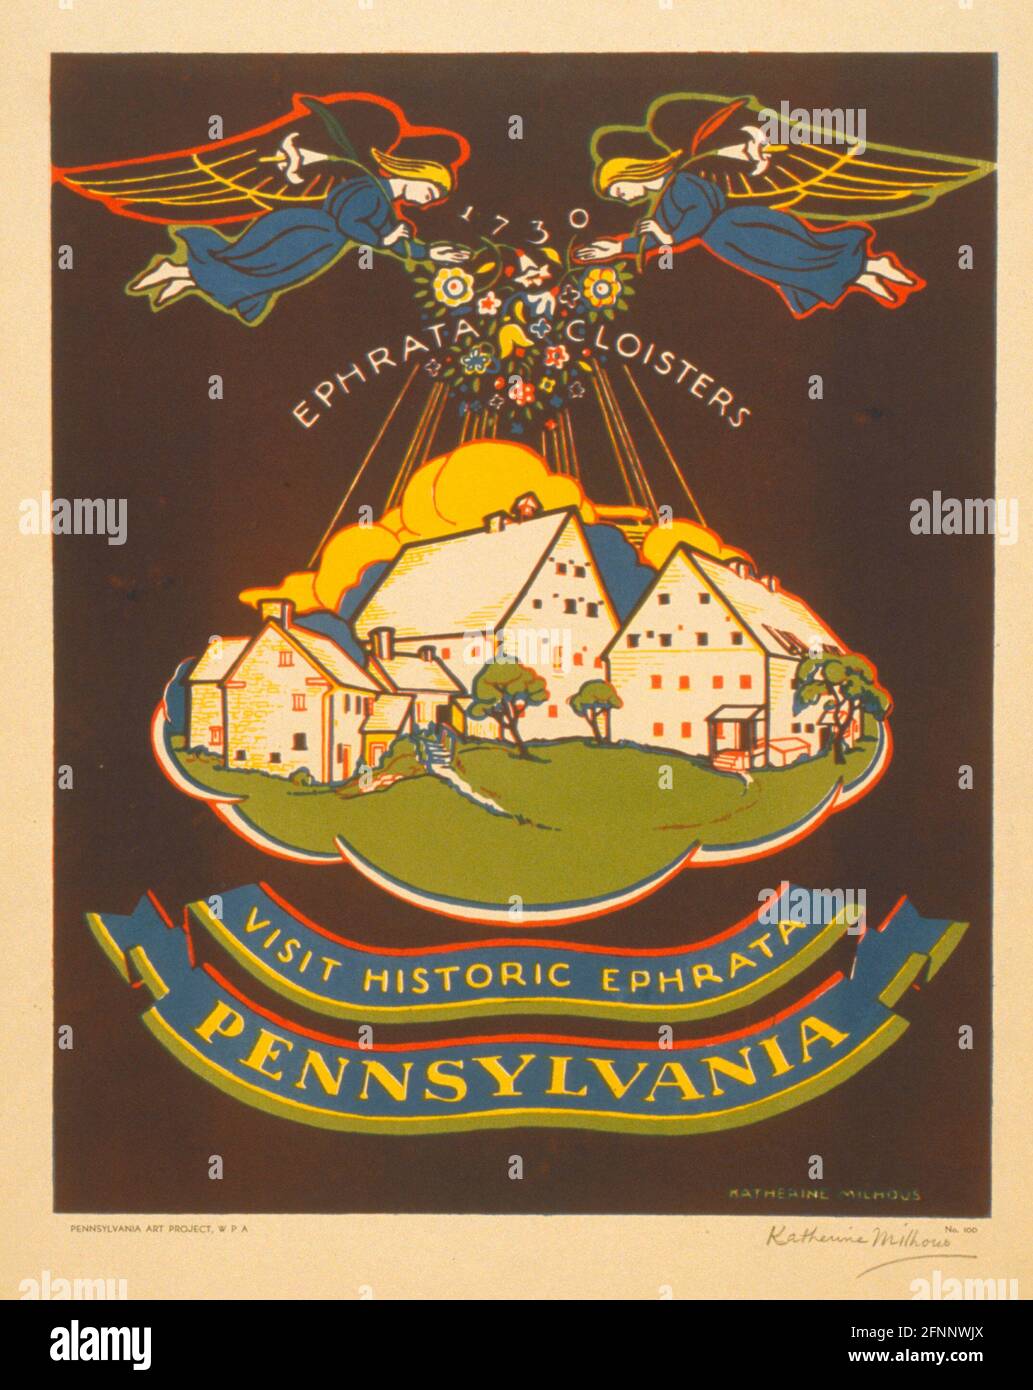 Besuchen Sie das historische Ephrata, Pennsylvania - Poster, auf dem das Ephrata-Kloster, Lancaster Co., Pennsylvania, gezeigt wird, auf dem zwei Engel Blumen auf die Gemeinde herablassen, um 1940 Stockfoto